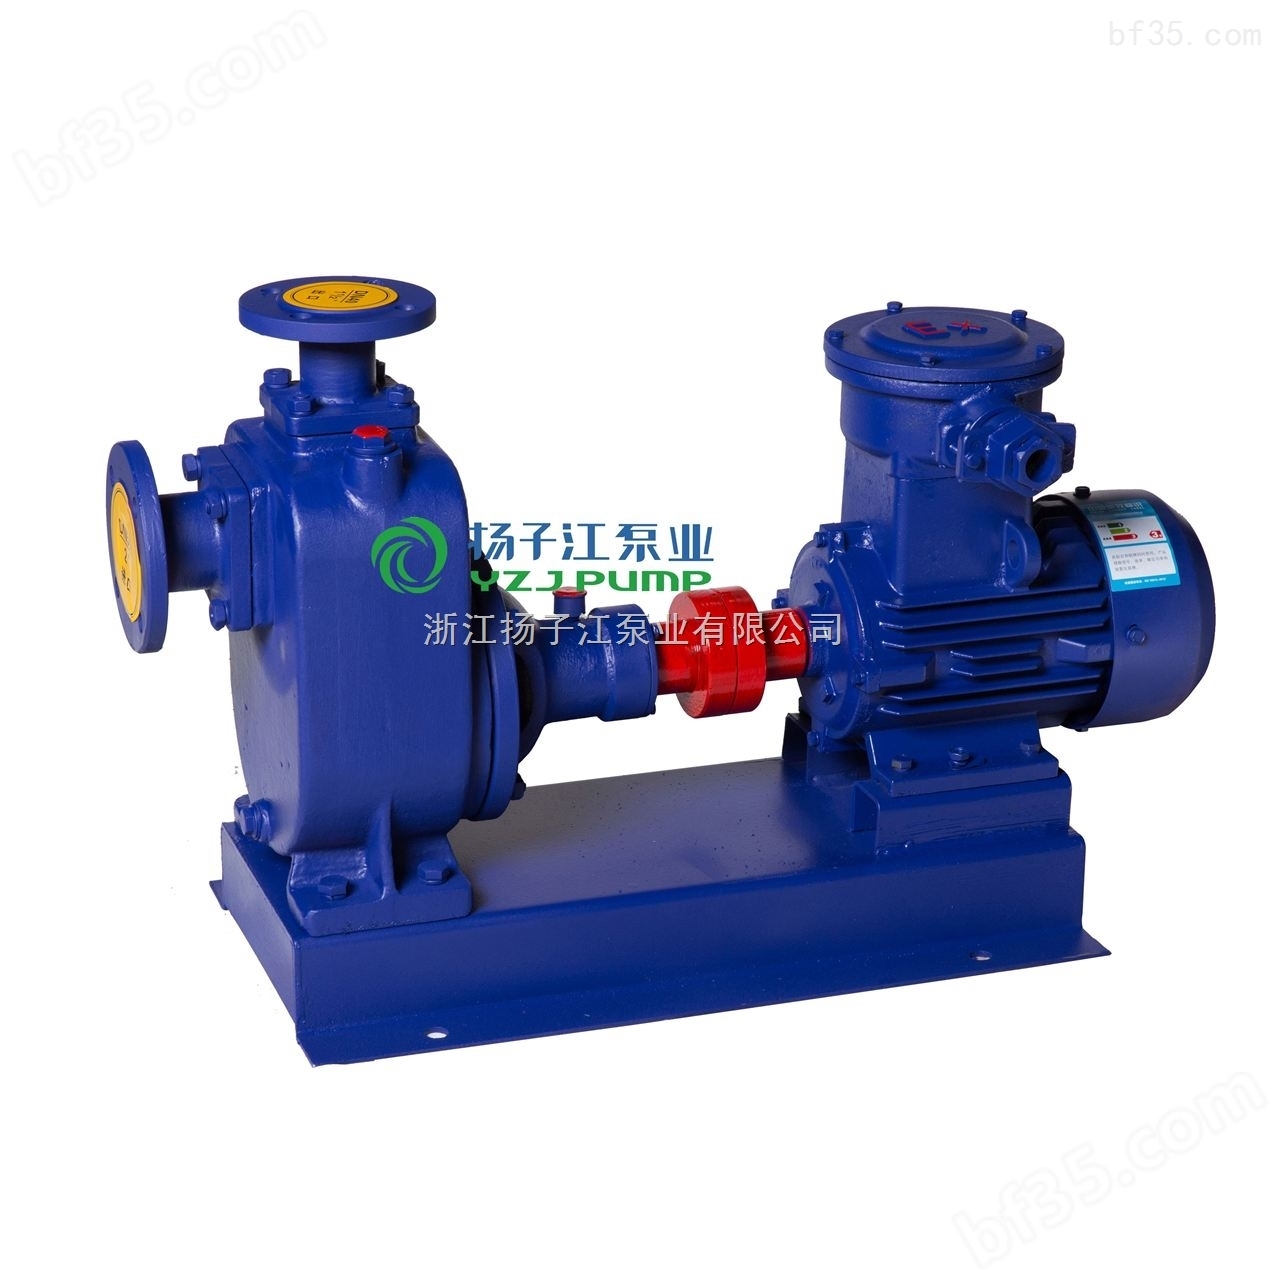 防爆油泵:CYZ-A型自吸式离心油泵,汽油泵,煤油泵,柴油泵